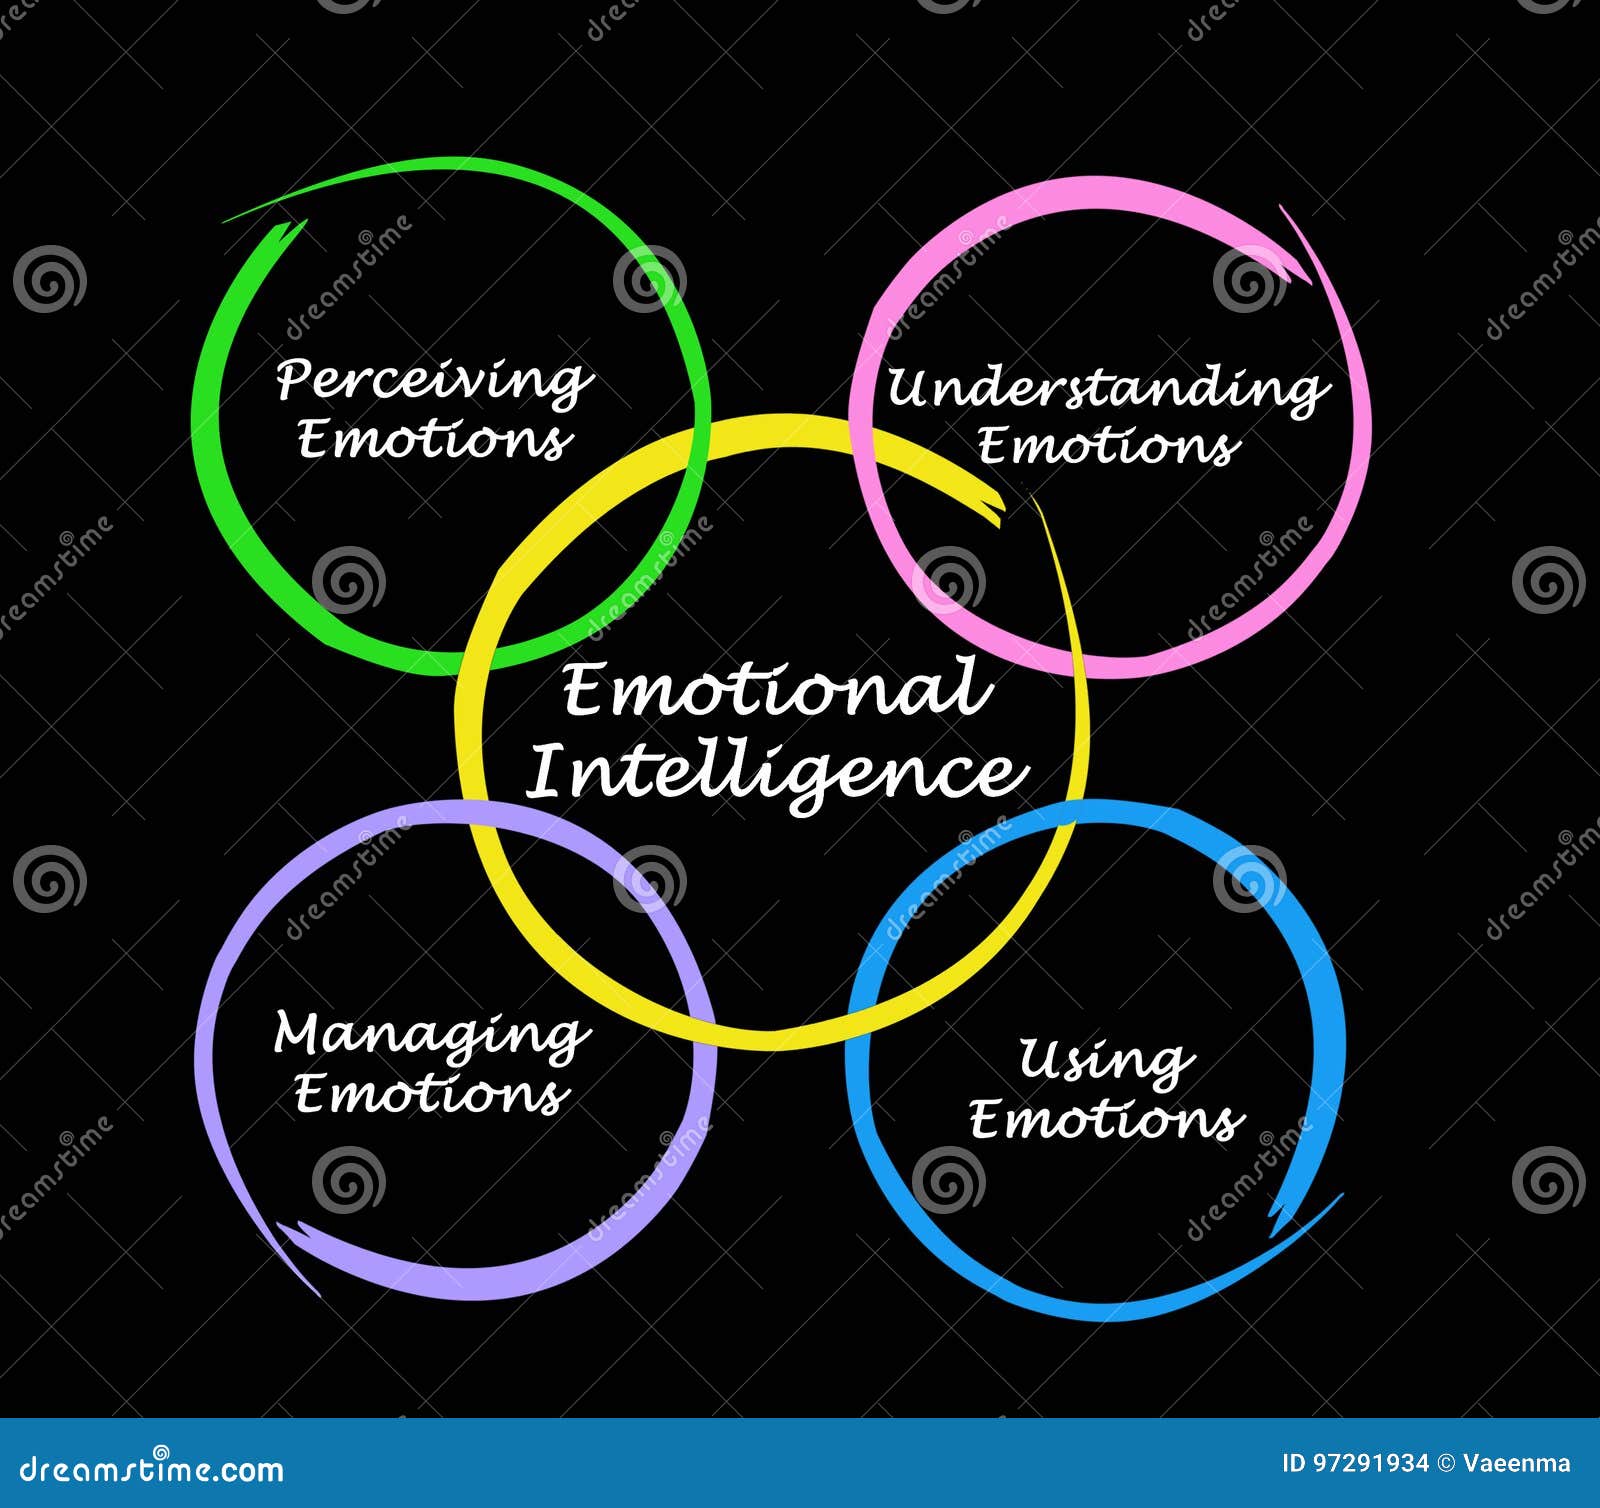 Diagram Of Emotional Intelligence Stock Illustration